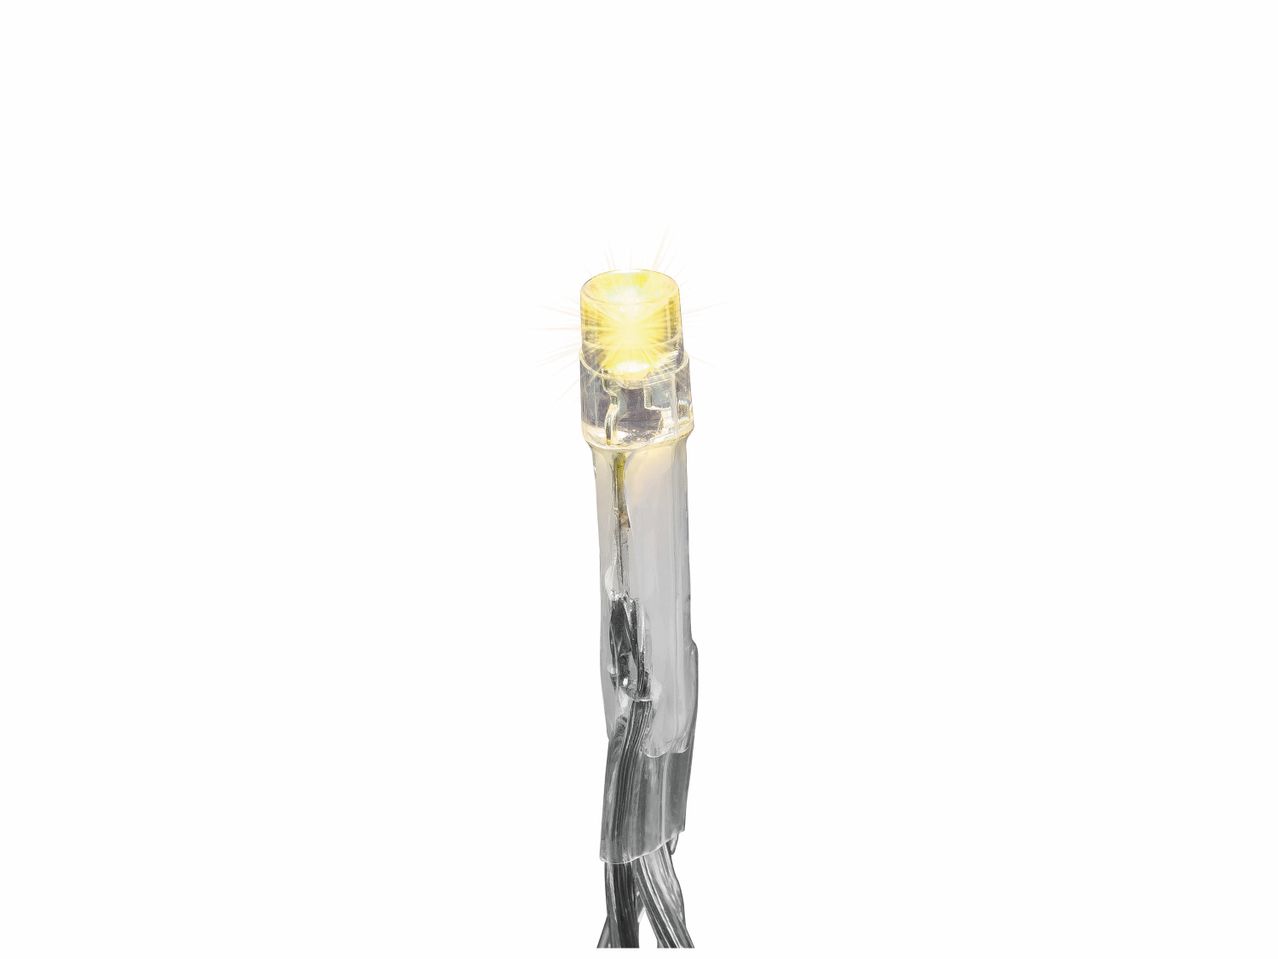 Guirlande lumineuse à LED pour intérieur , prezzo 2.99 EUR 
Guirlande lumineuse ...